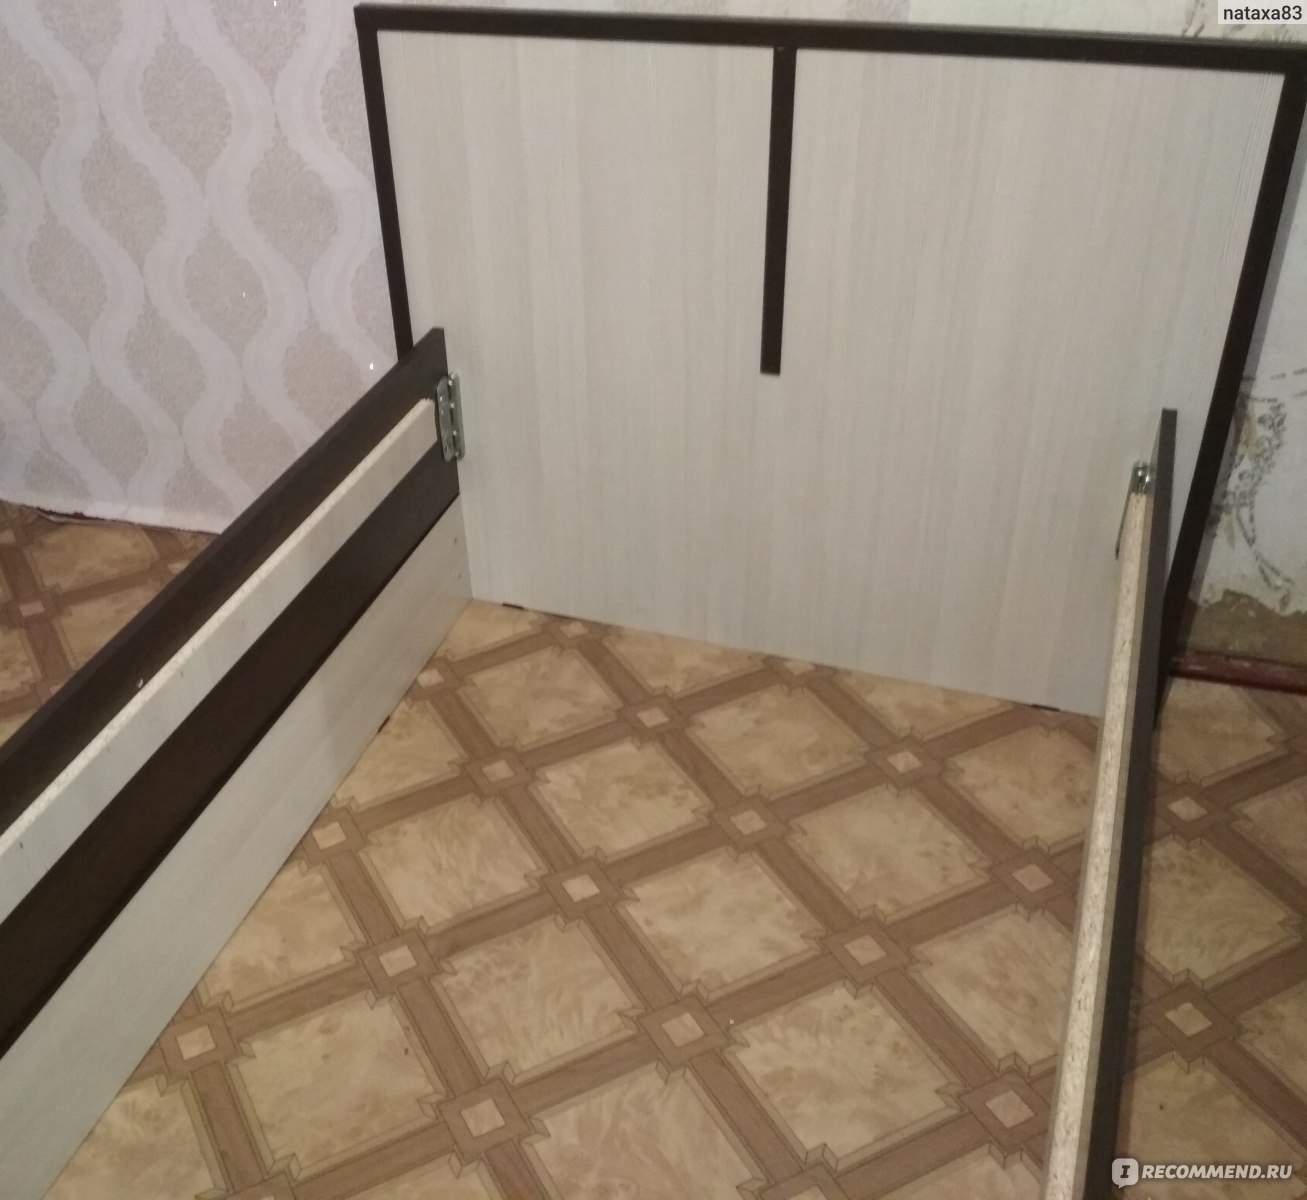 Сборка кровати сакура с выдвижными ящиками пошаговая инструкция двуспальная